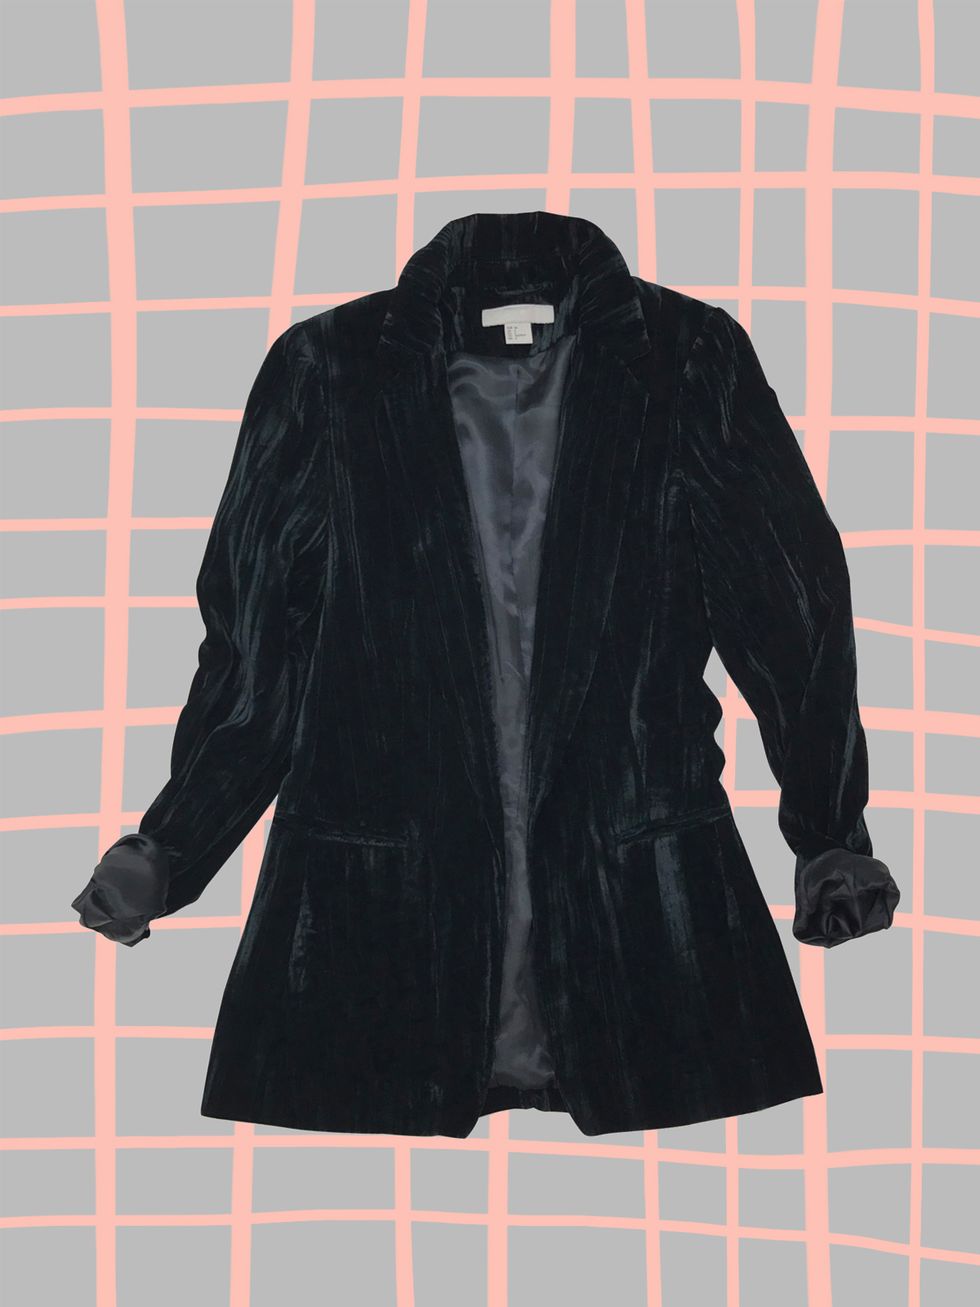 Clothing, Black, Outerwear, Jacket, Leather, Sleeve, Blazer, Fur, Coat, Leather jacket, 